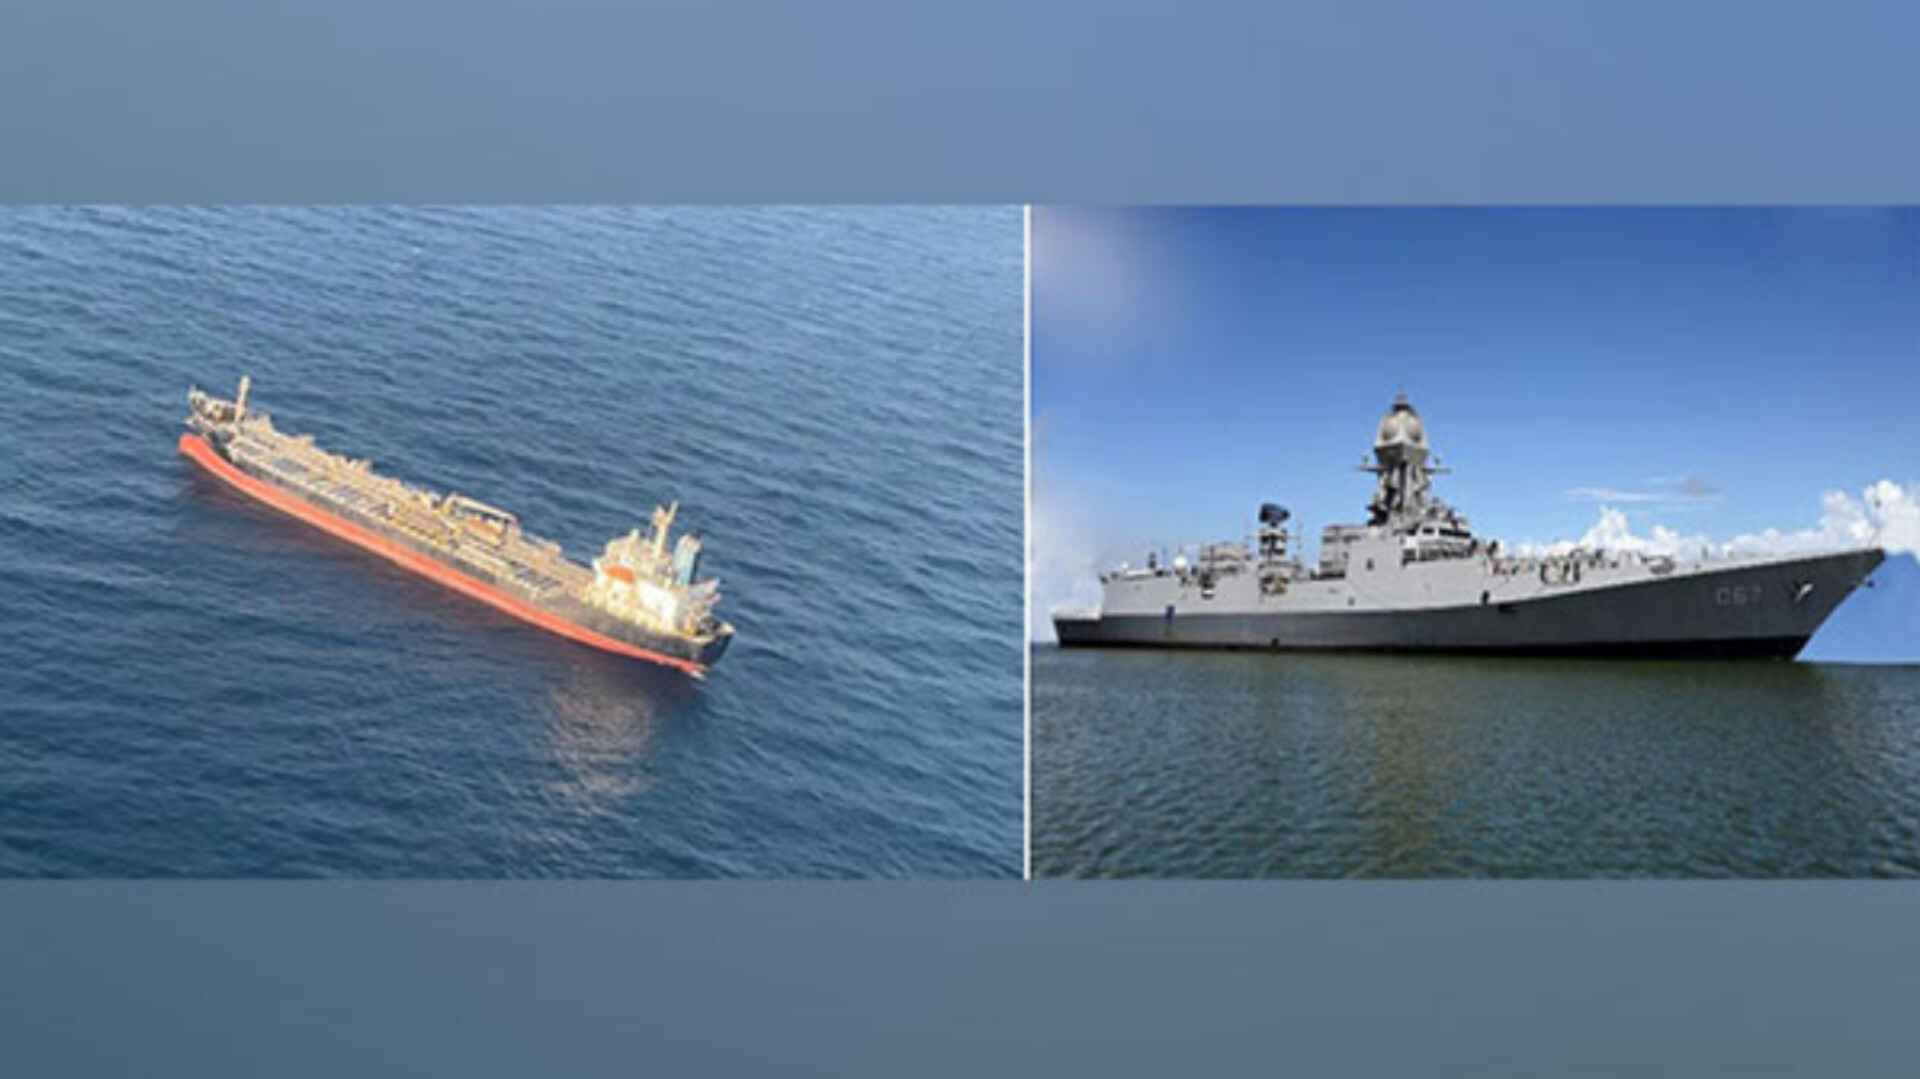 भारतीय तट पर व्यापारिक जहाज पर ड्रोन हमले की जांच कर रही है नौसेना